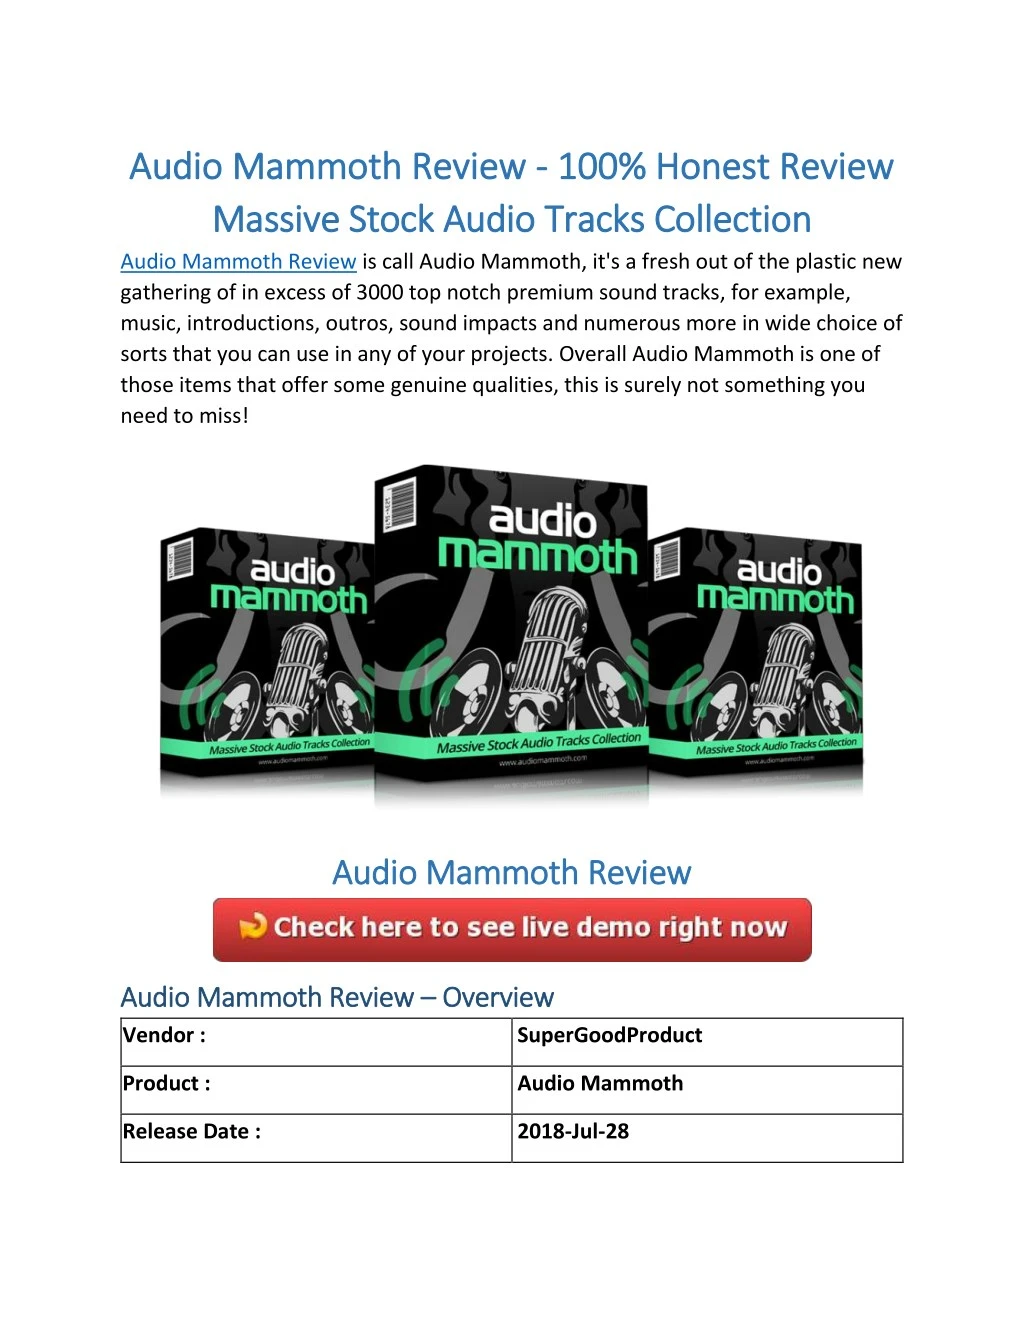 audio mammoth review audio mammoth review